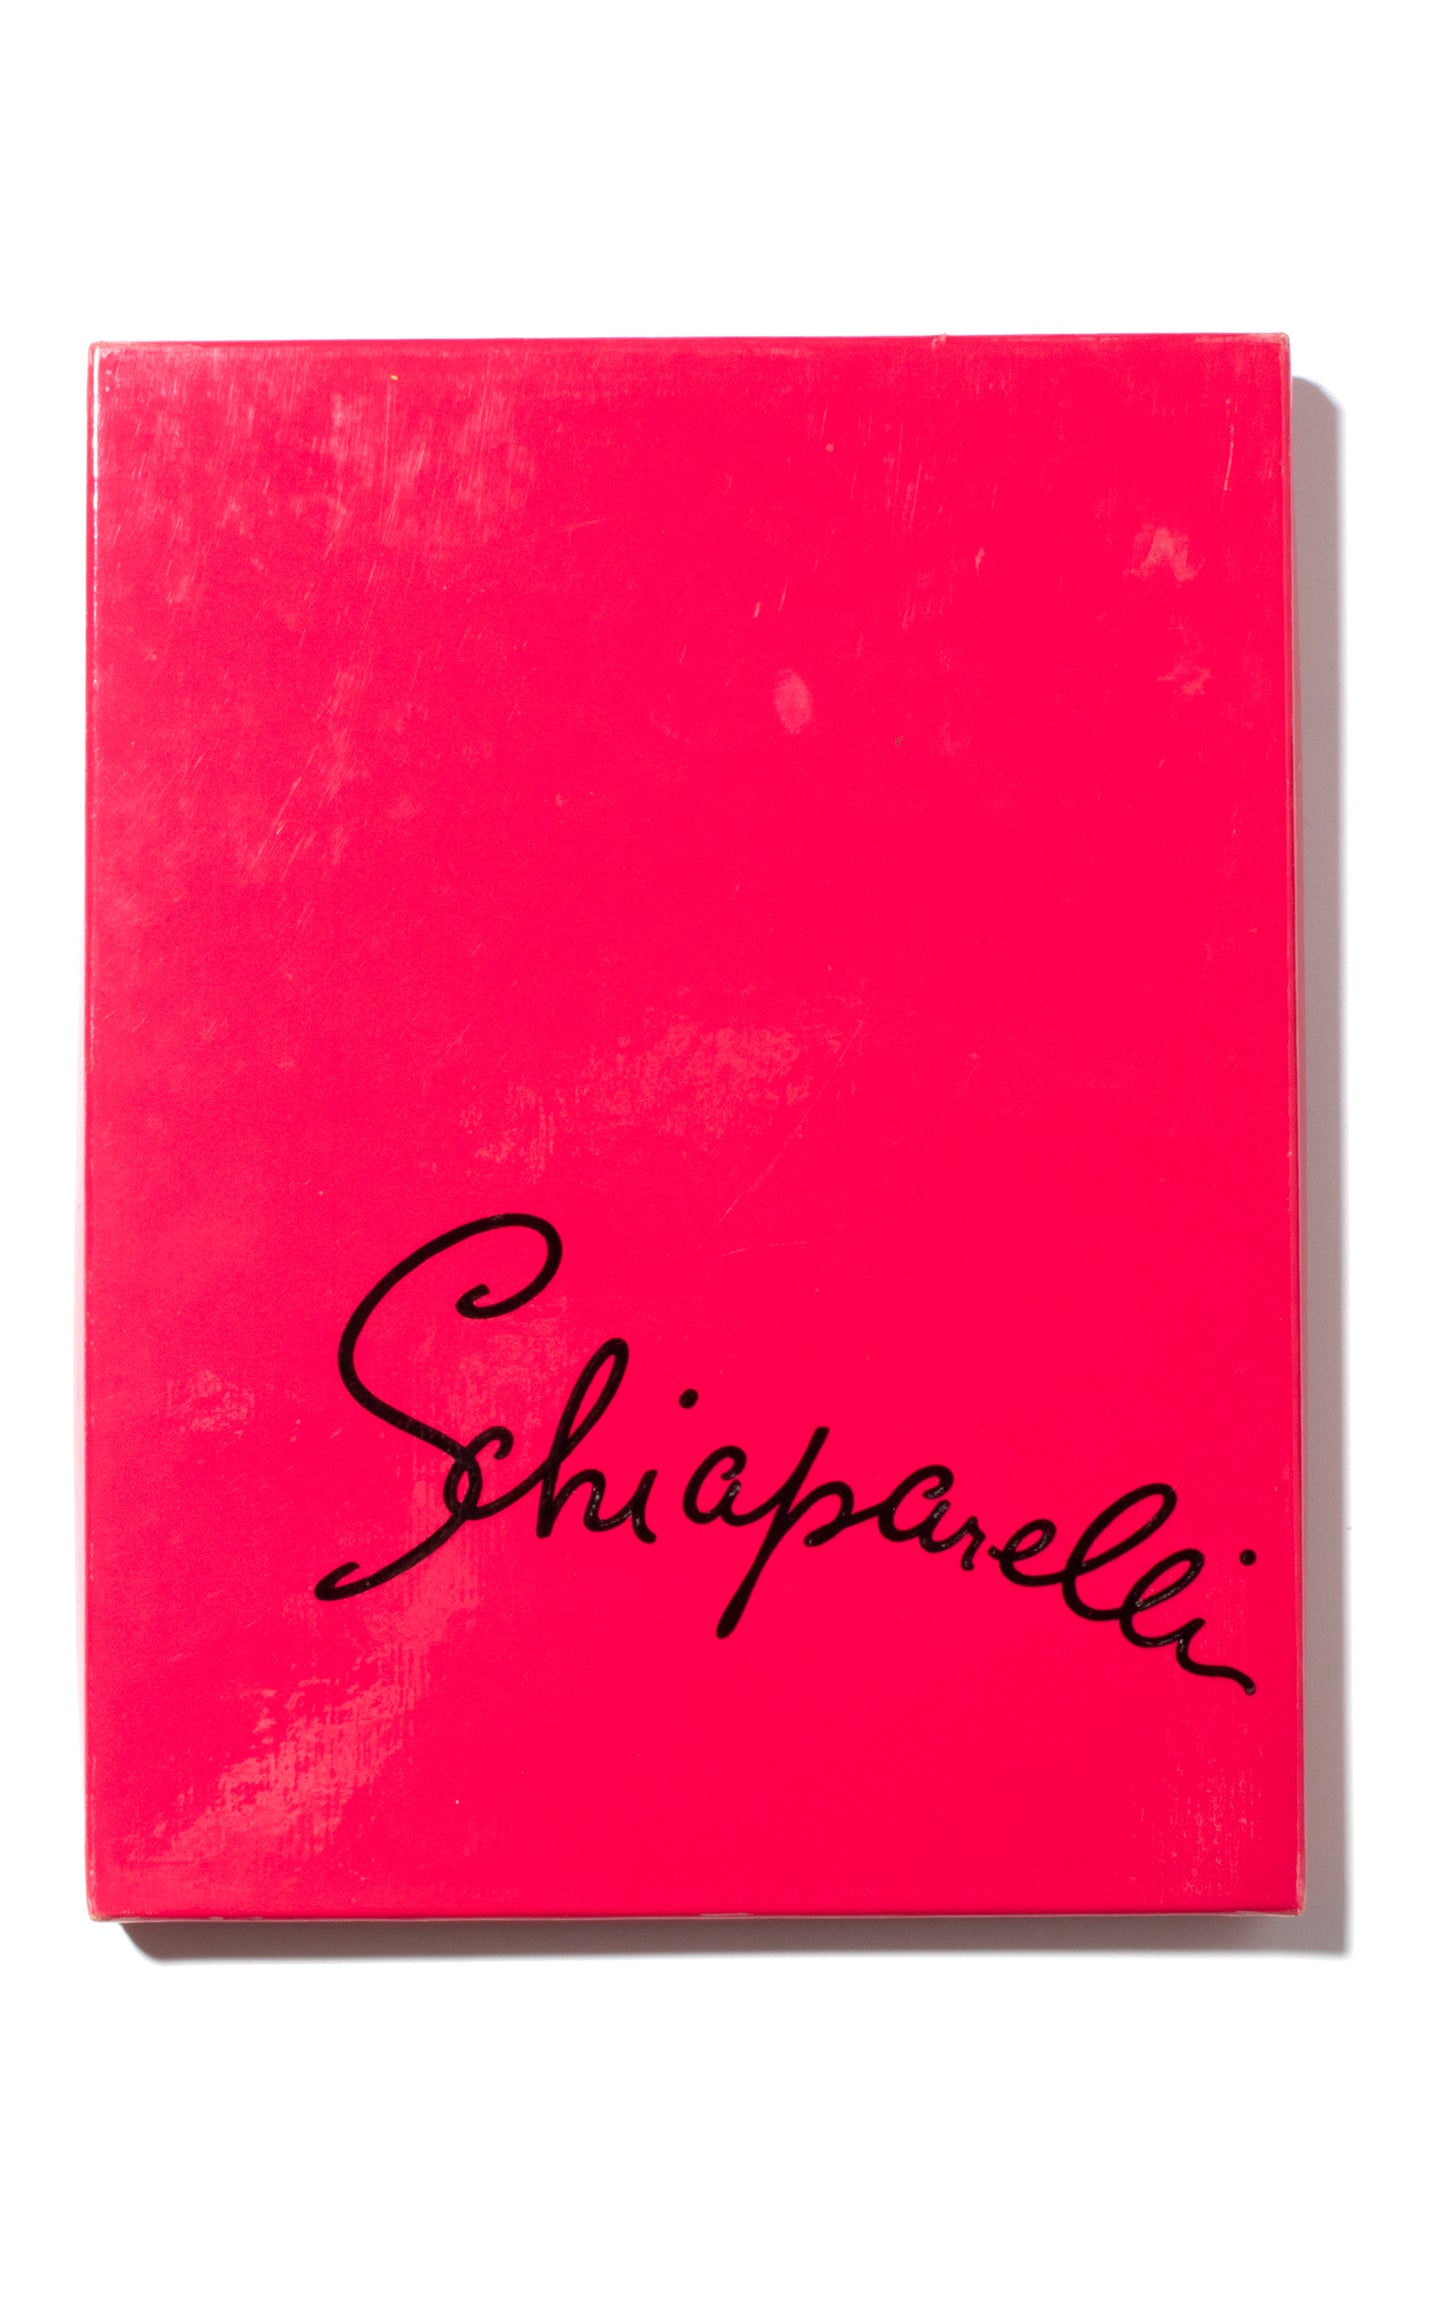 1960s Schiaparelli Back Seam Nylon Stockings x3 Pairs (size 8.5-9)